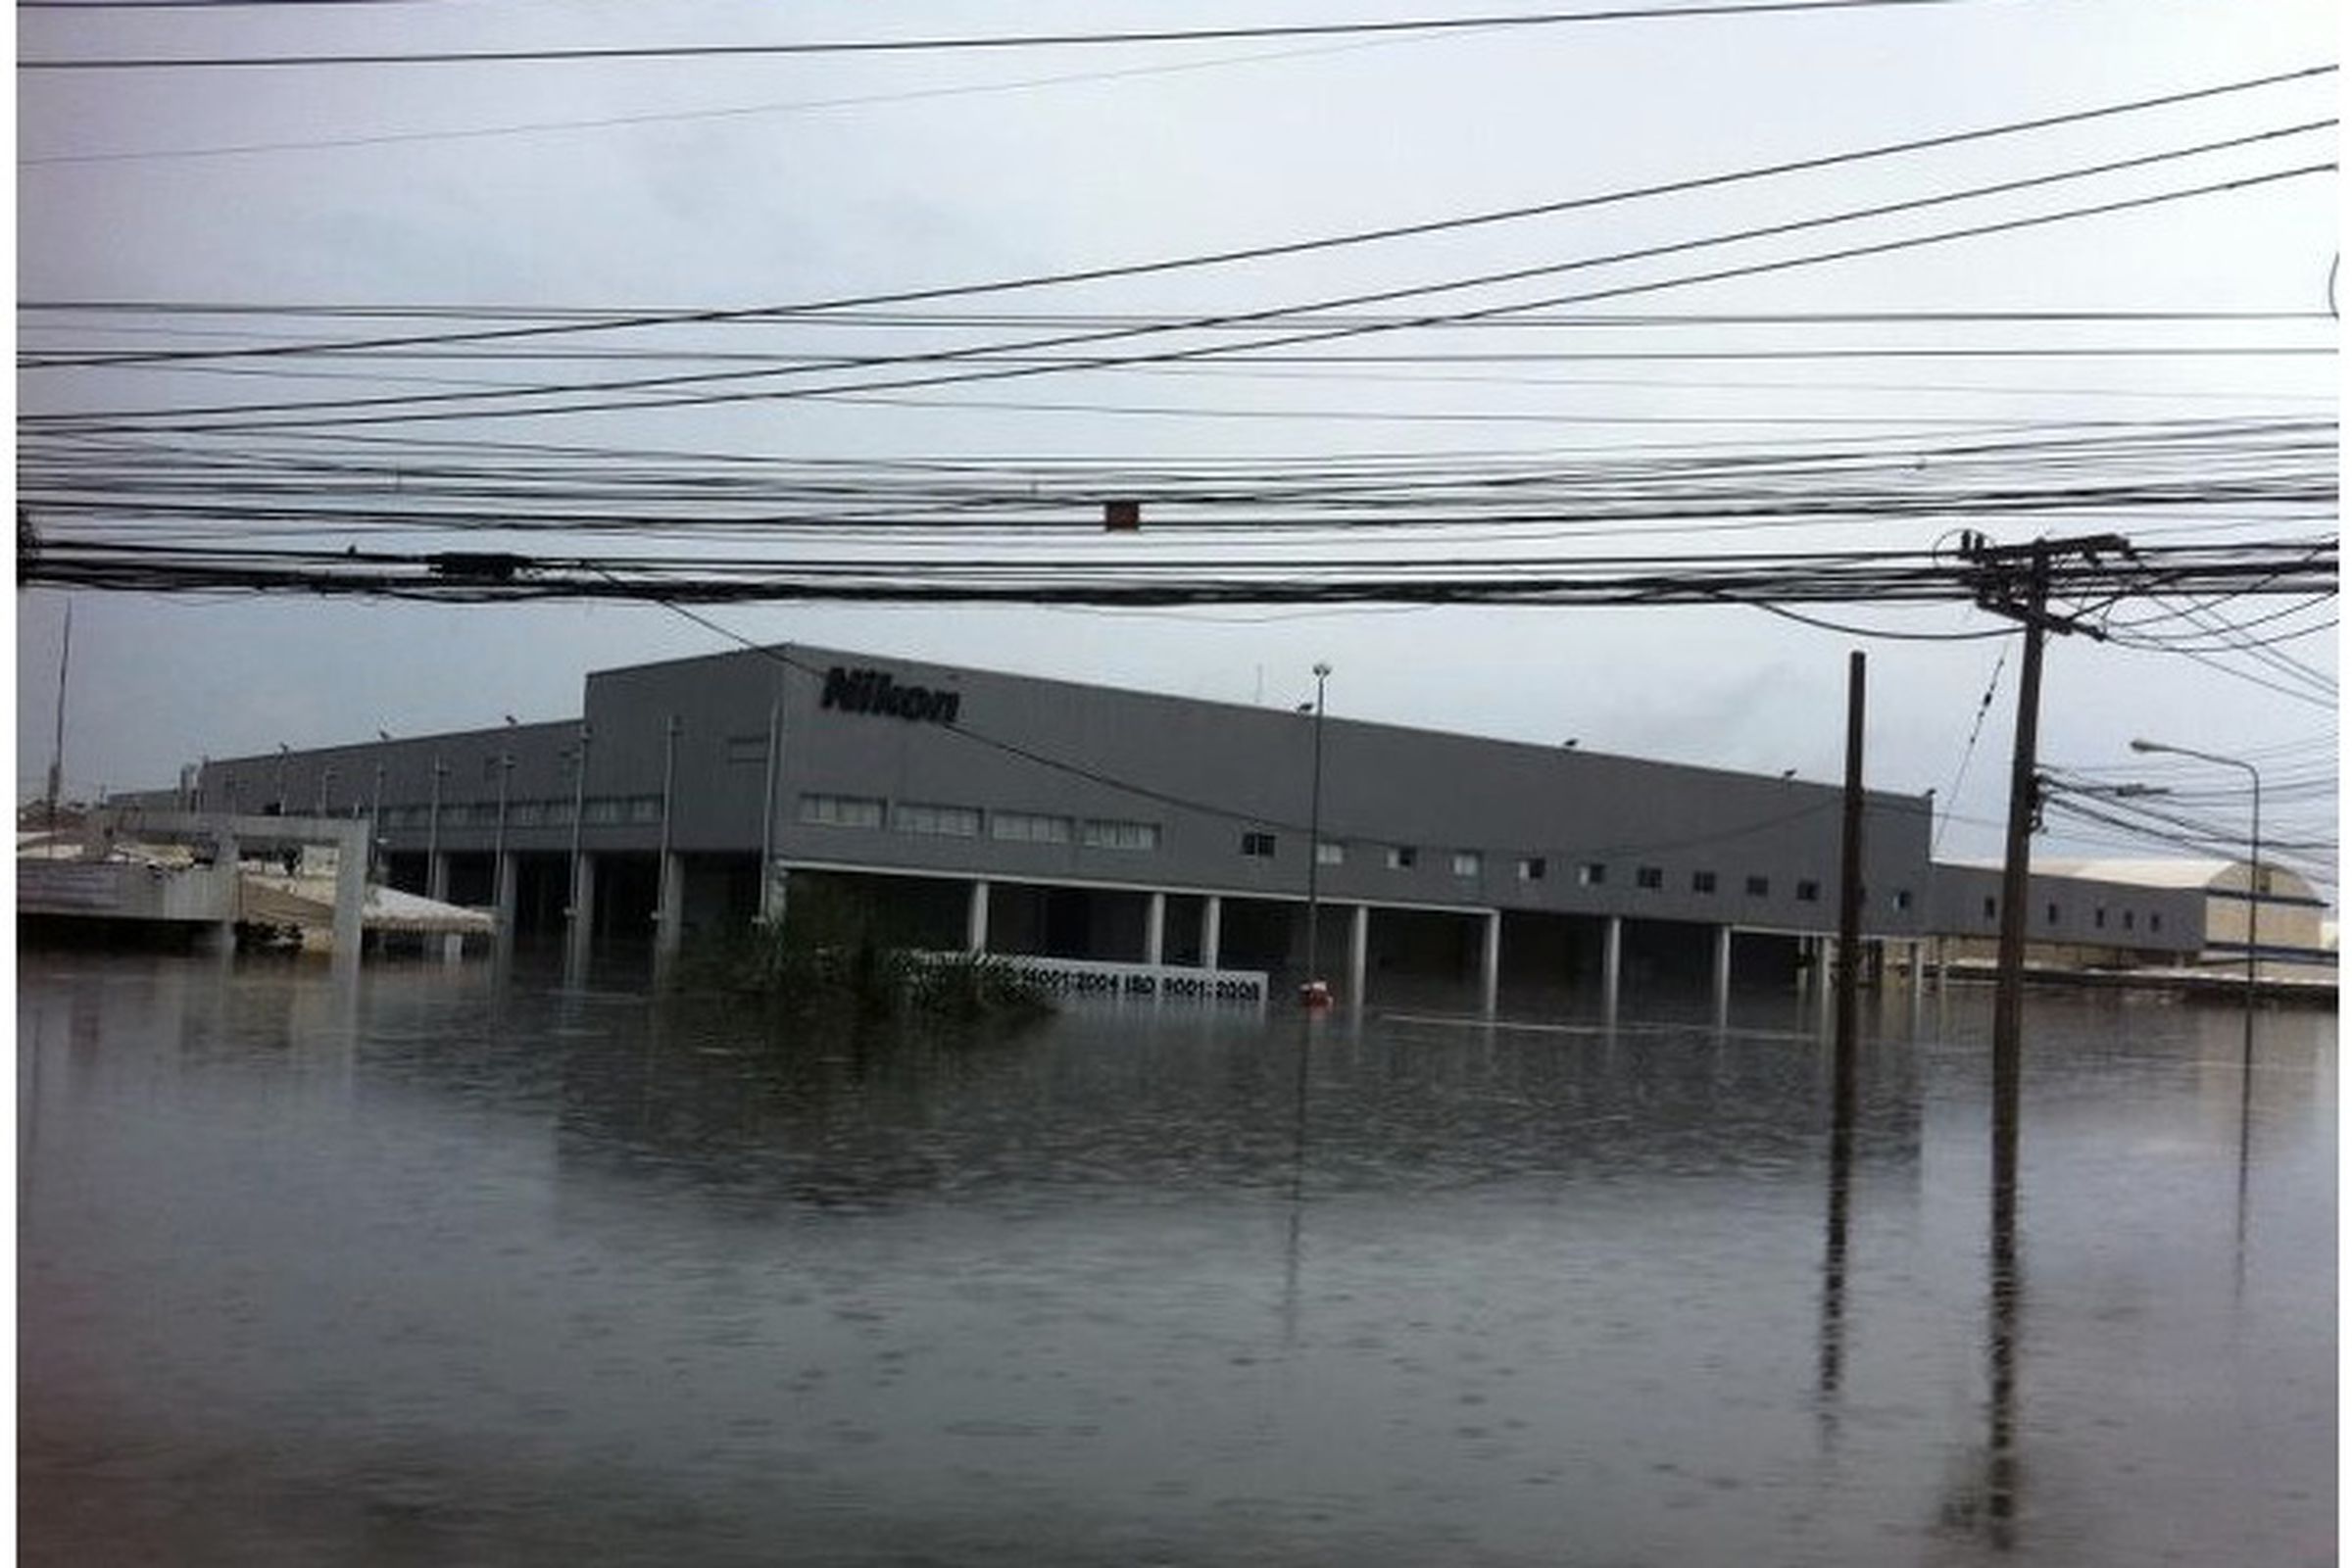 Nikon factory flood